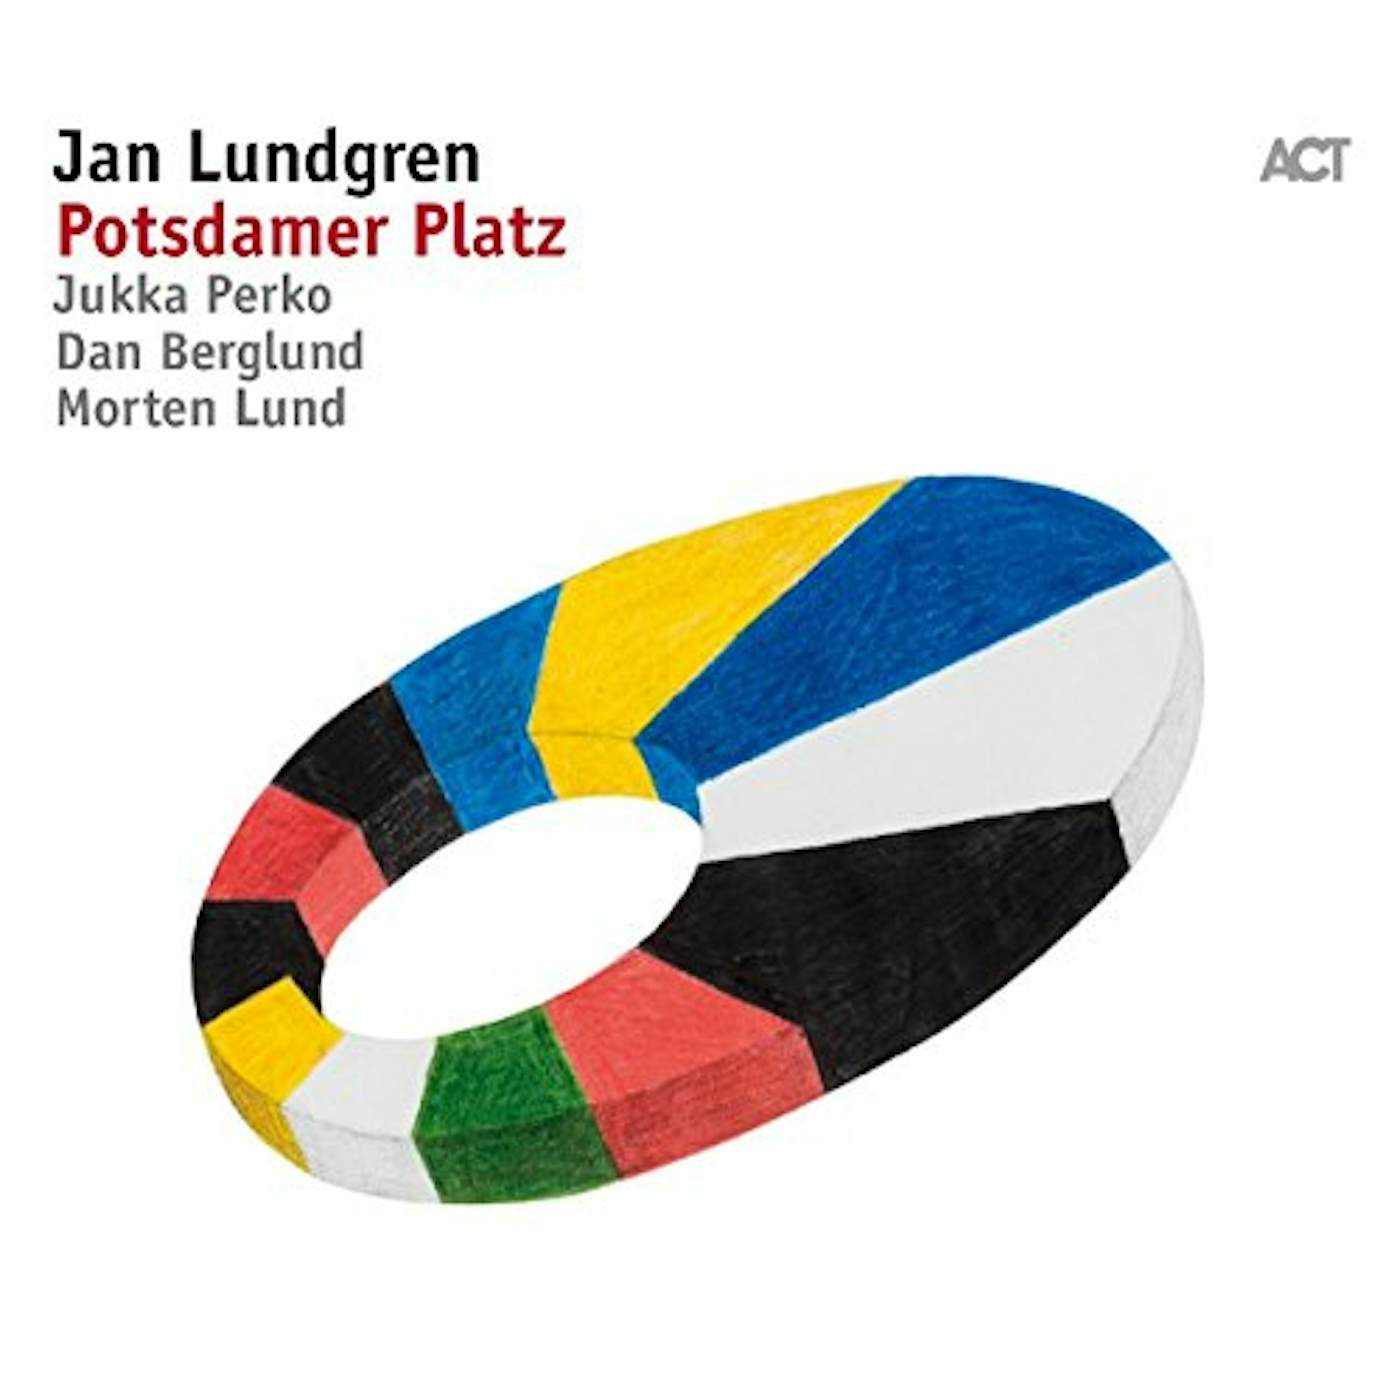 Jan Lundgren POTSDAMER PLATZ Vinyl Record